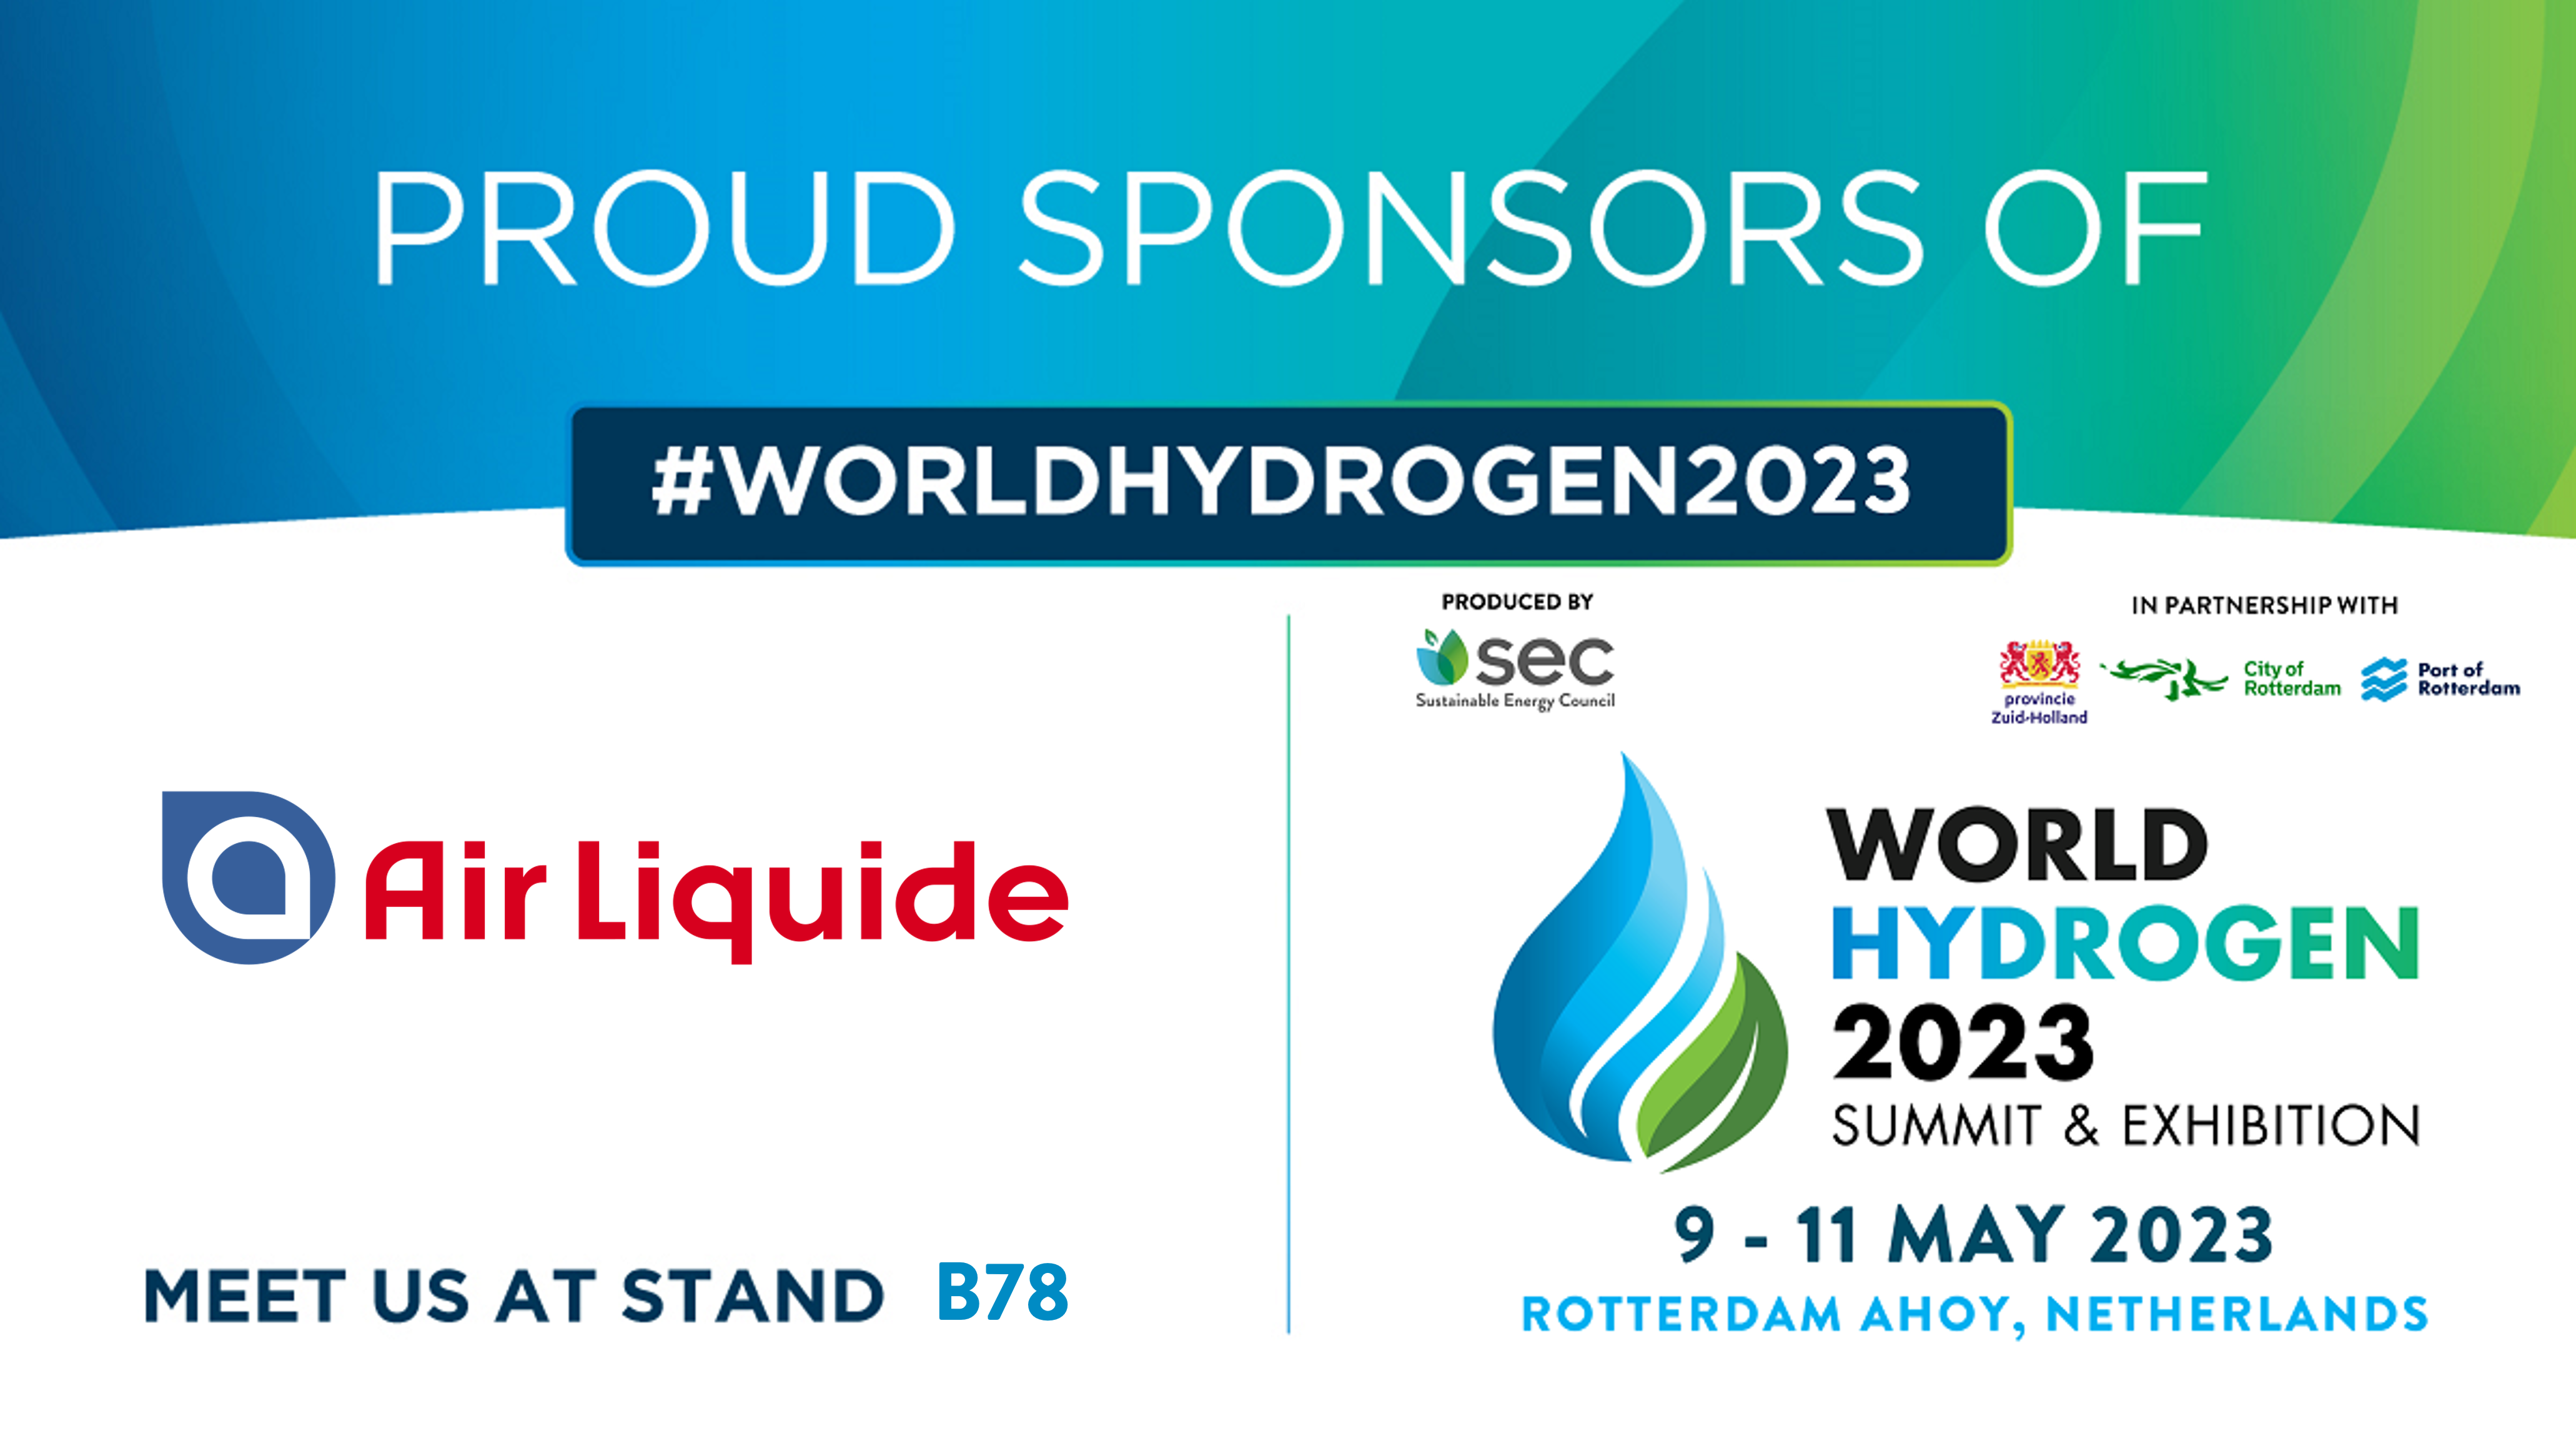 World Hydrogen Summit